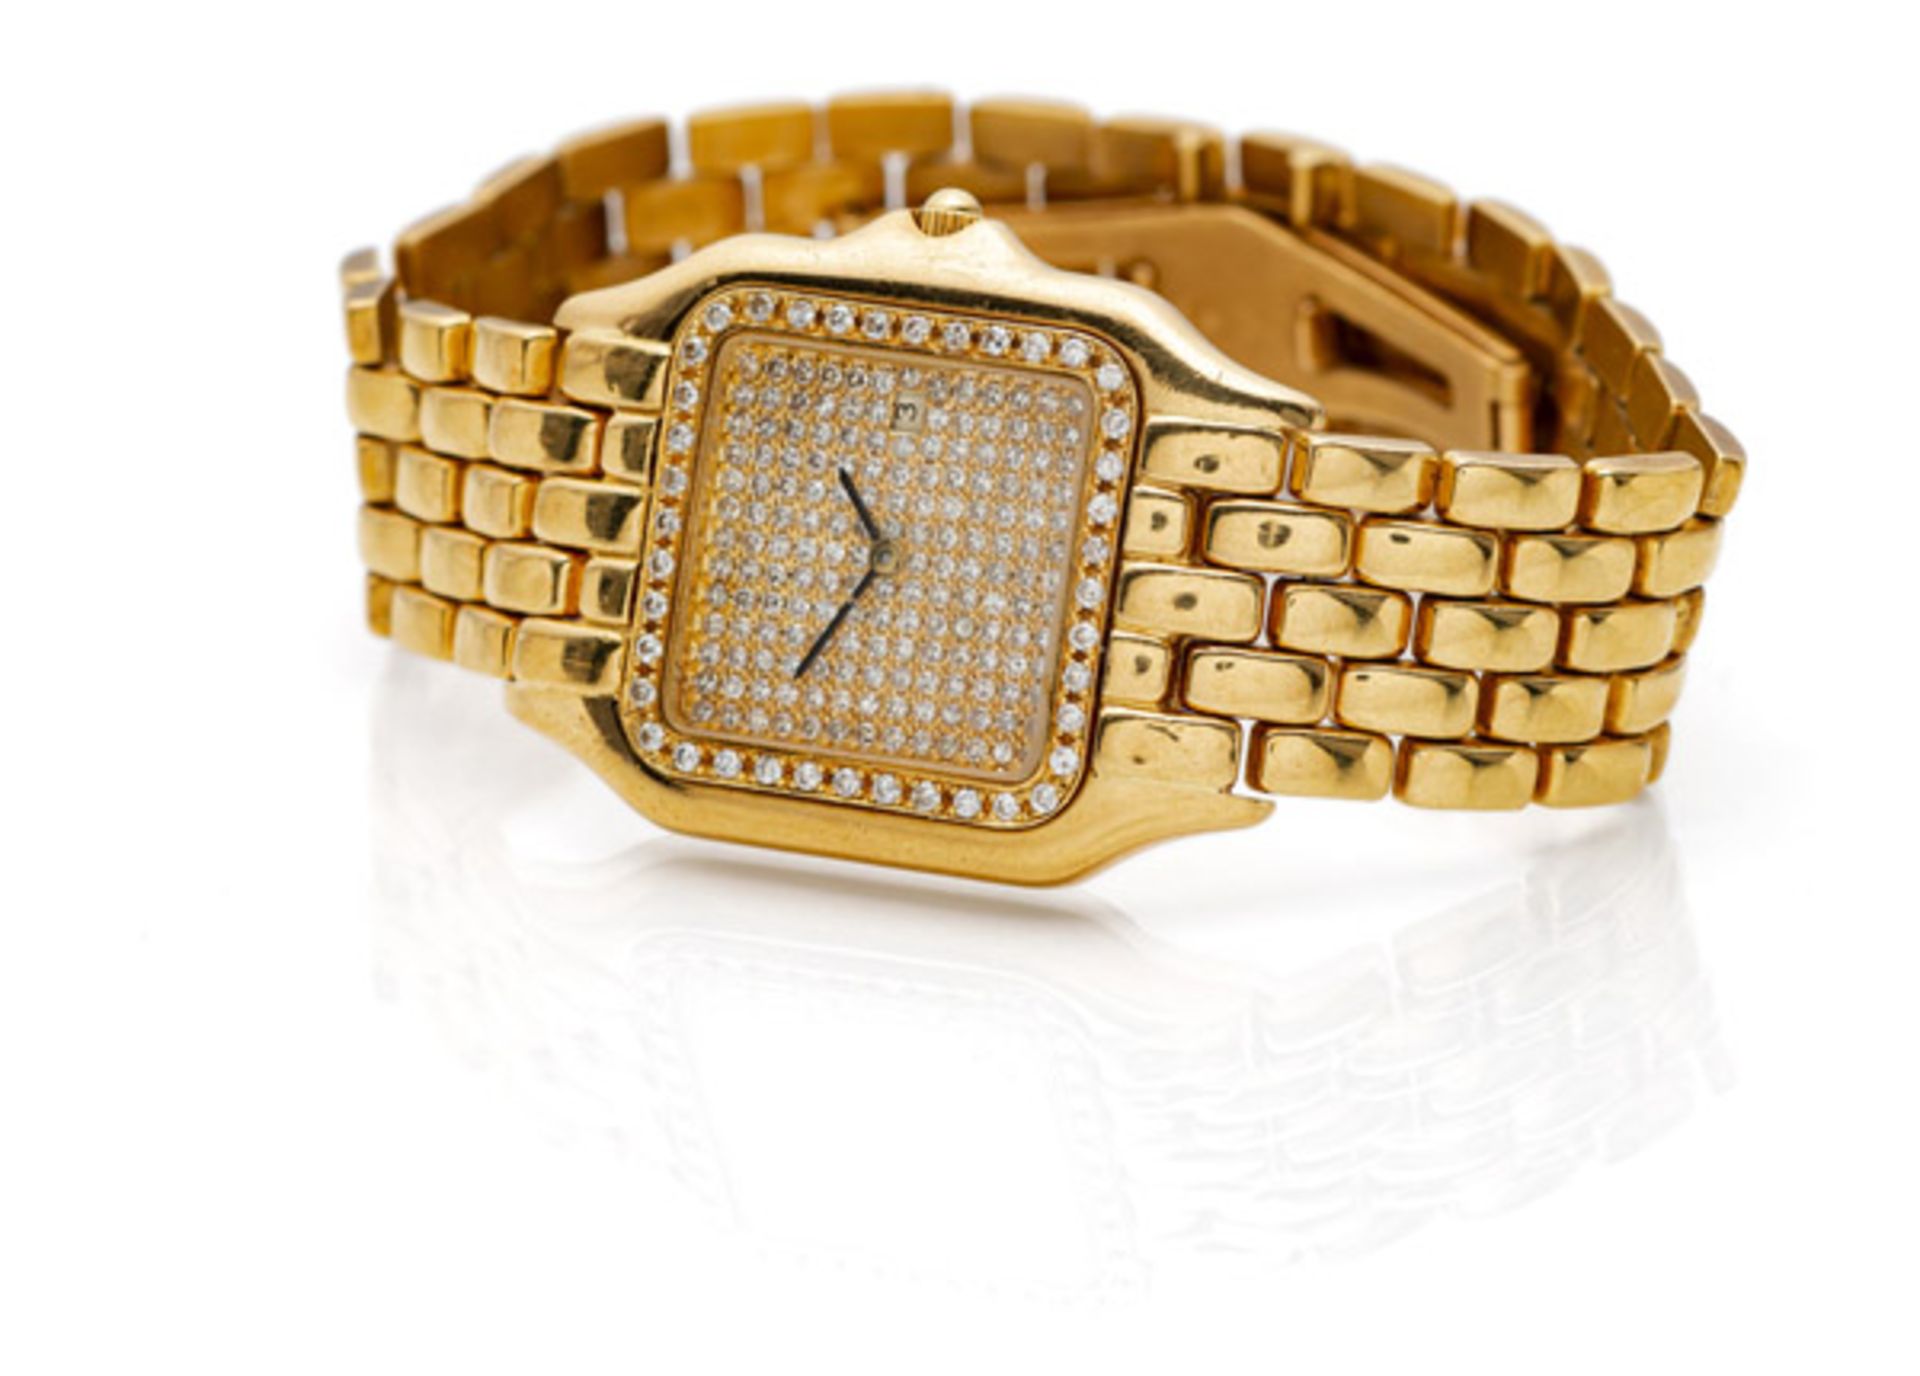 Goldene Diamantuhr im Stile Cartiers - Bild 2 aus 3